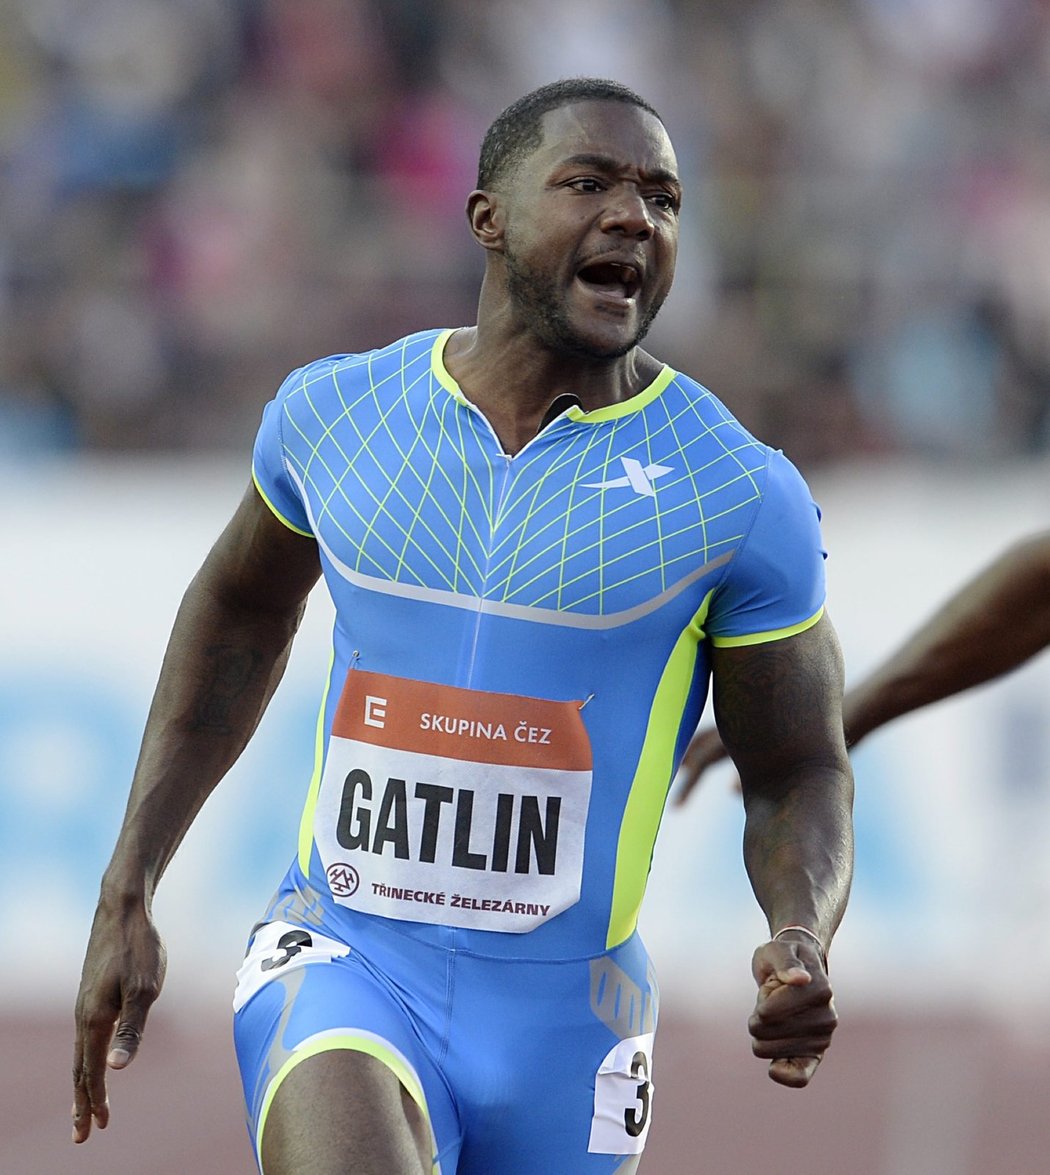 Americký sprinter Justin Gatlin se postaral o vrchol atletického mítinku Zlatá tretra v Ostravě. Závěrečný závod v běhu na 100 metrů vyhrál v nejrychlejším světovém času letošní sezony 9,86 sekundy, byť foukal mírný protivítr 0,4 metru za sekundu.